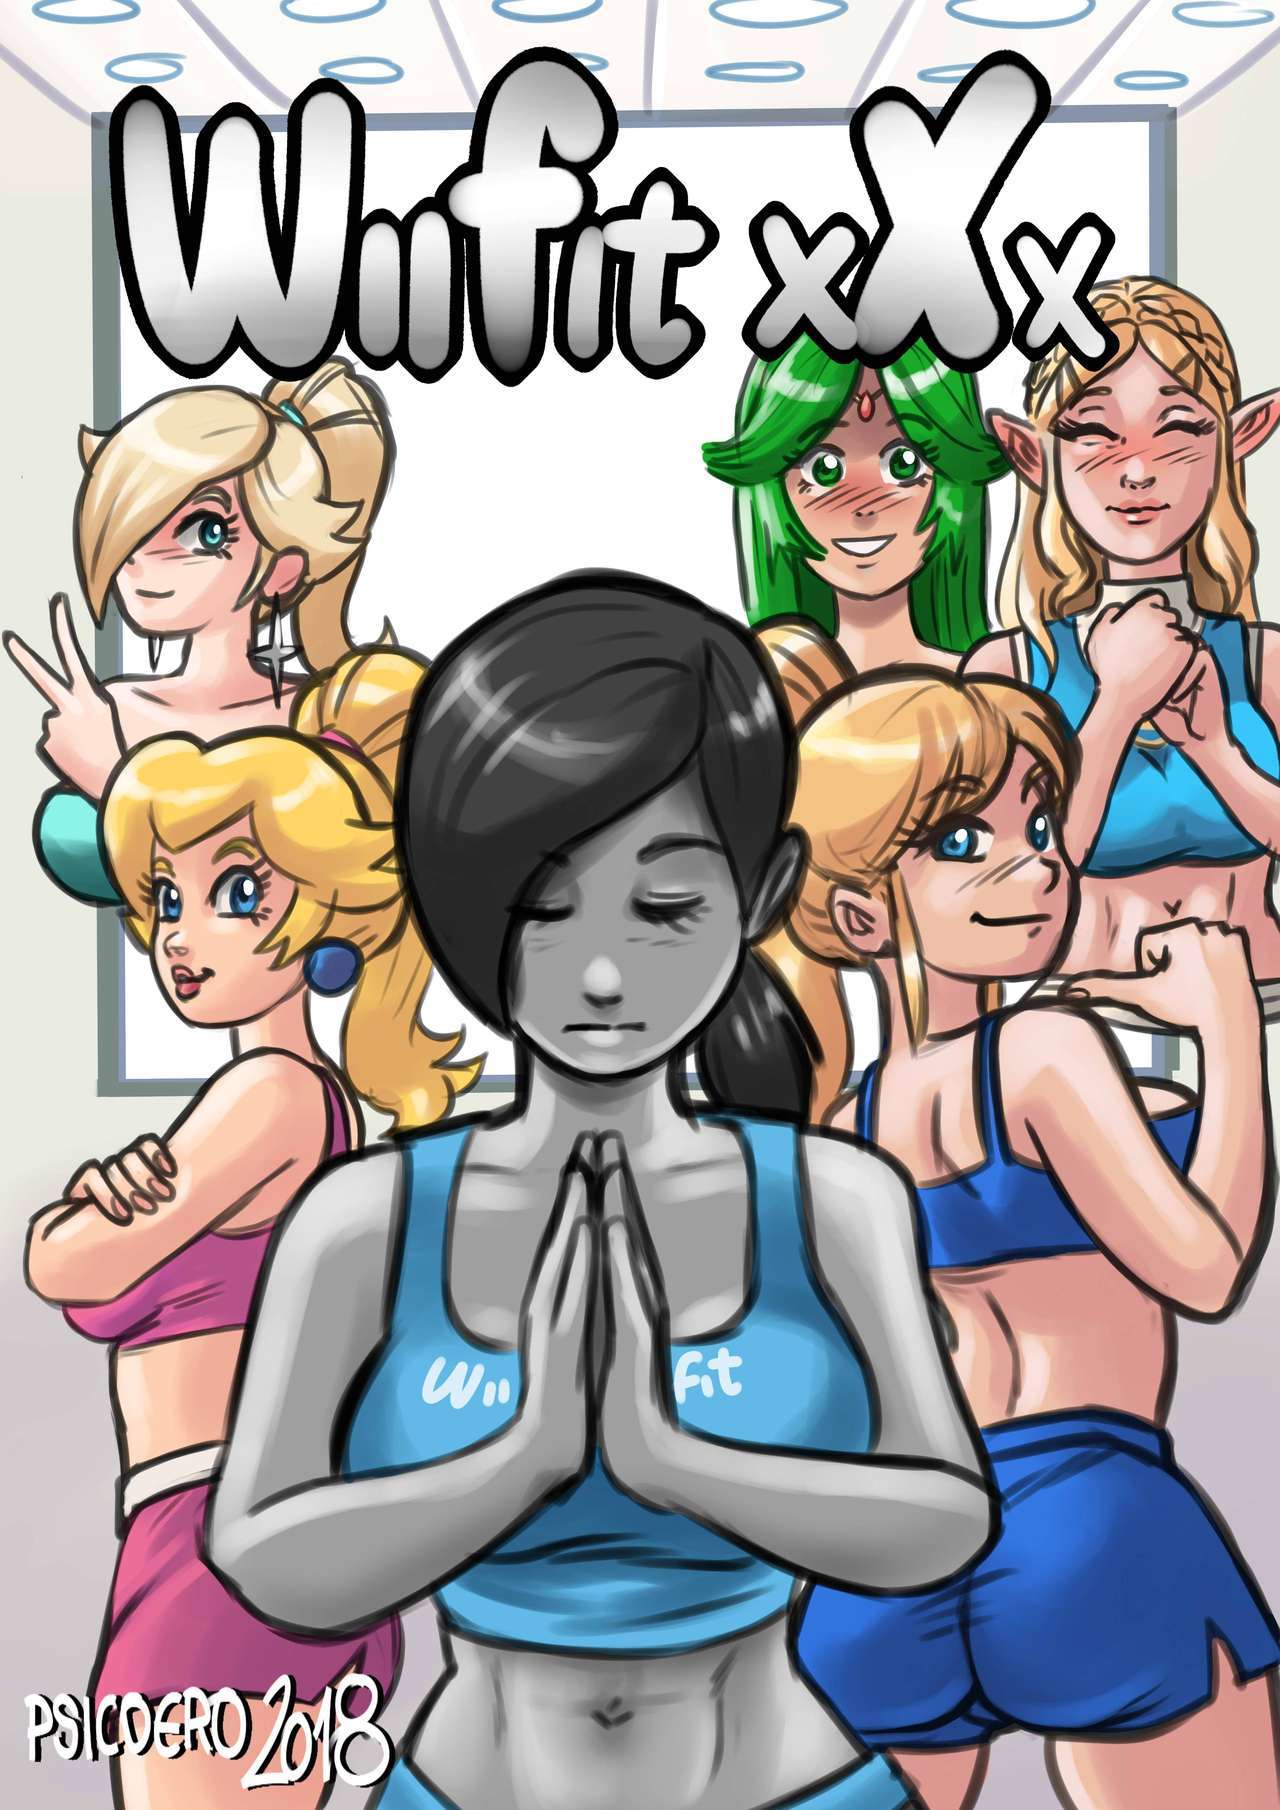 Wii Fit Trainer Samus Porn - Wii Fit xXx - KingComiX.com